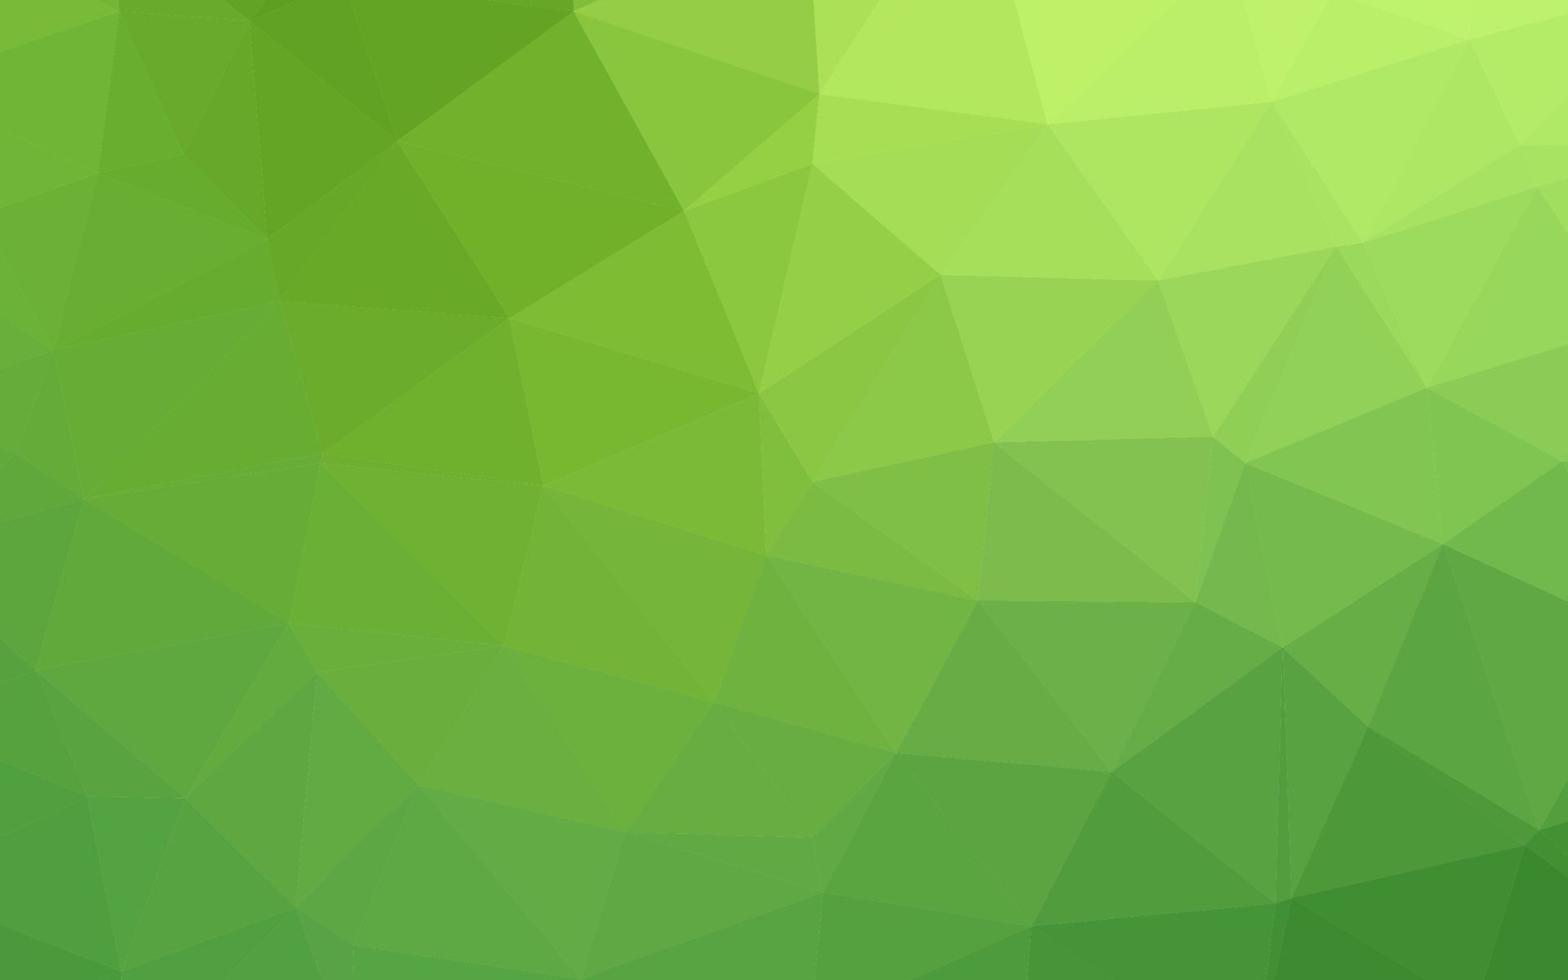 diseño poligonal abstracto vector verde claro.